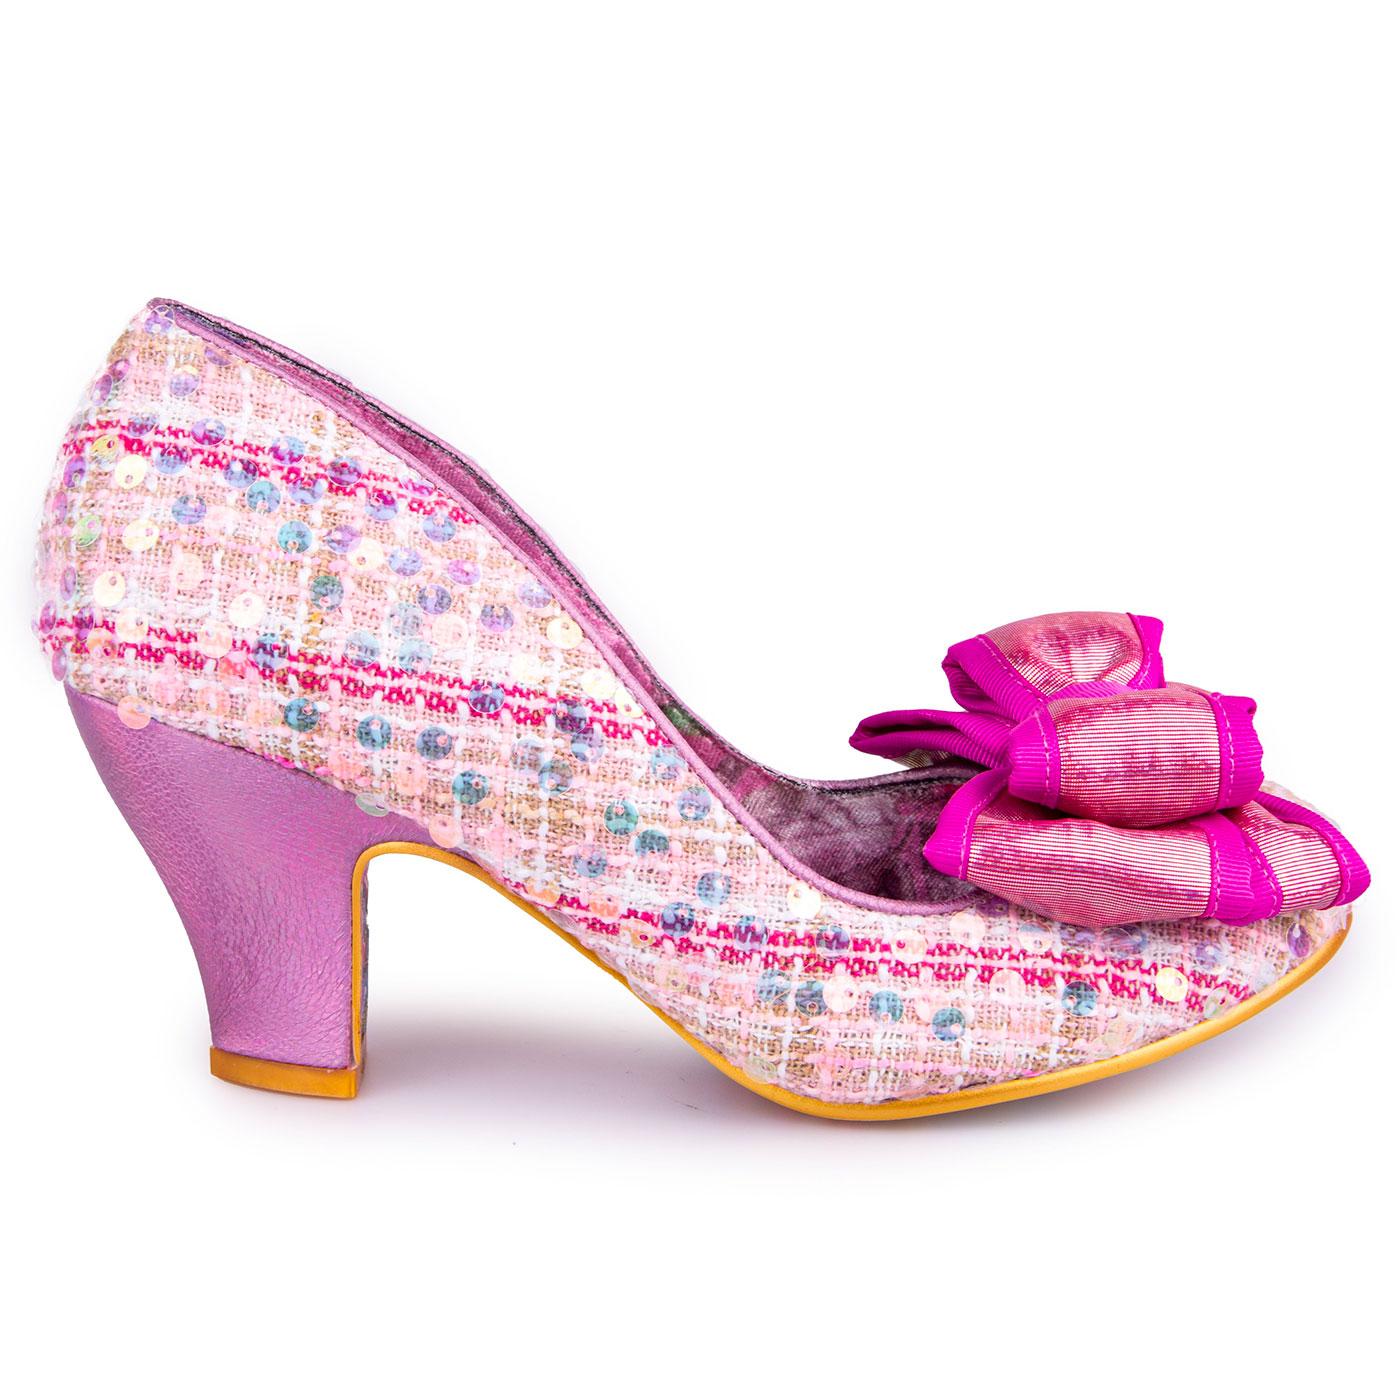 IRREGULAR CHOICE 'Ban Joe' Retro Tweed Shoes in Pink